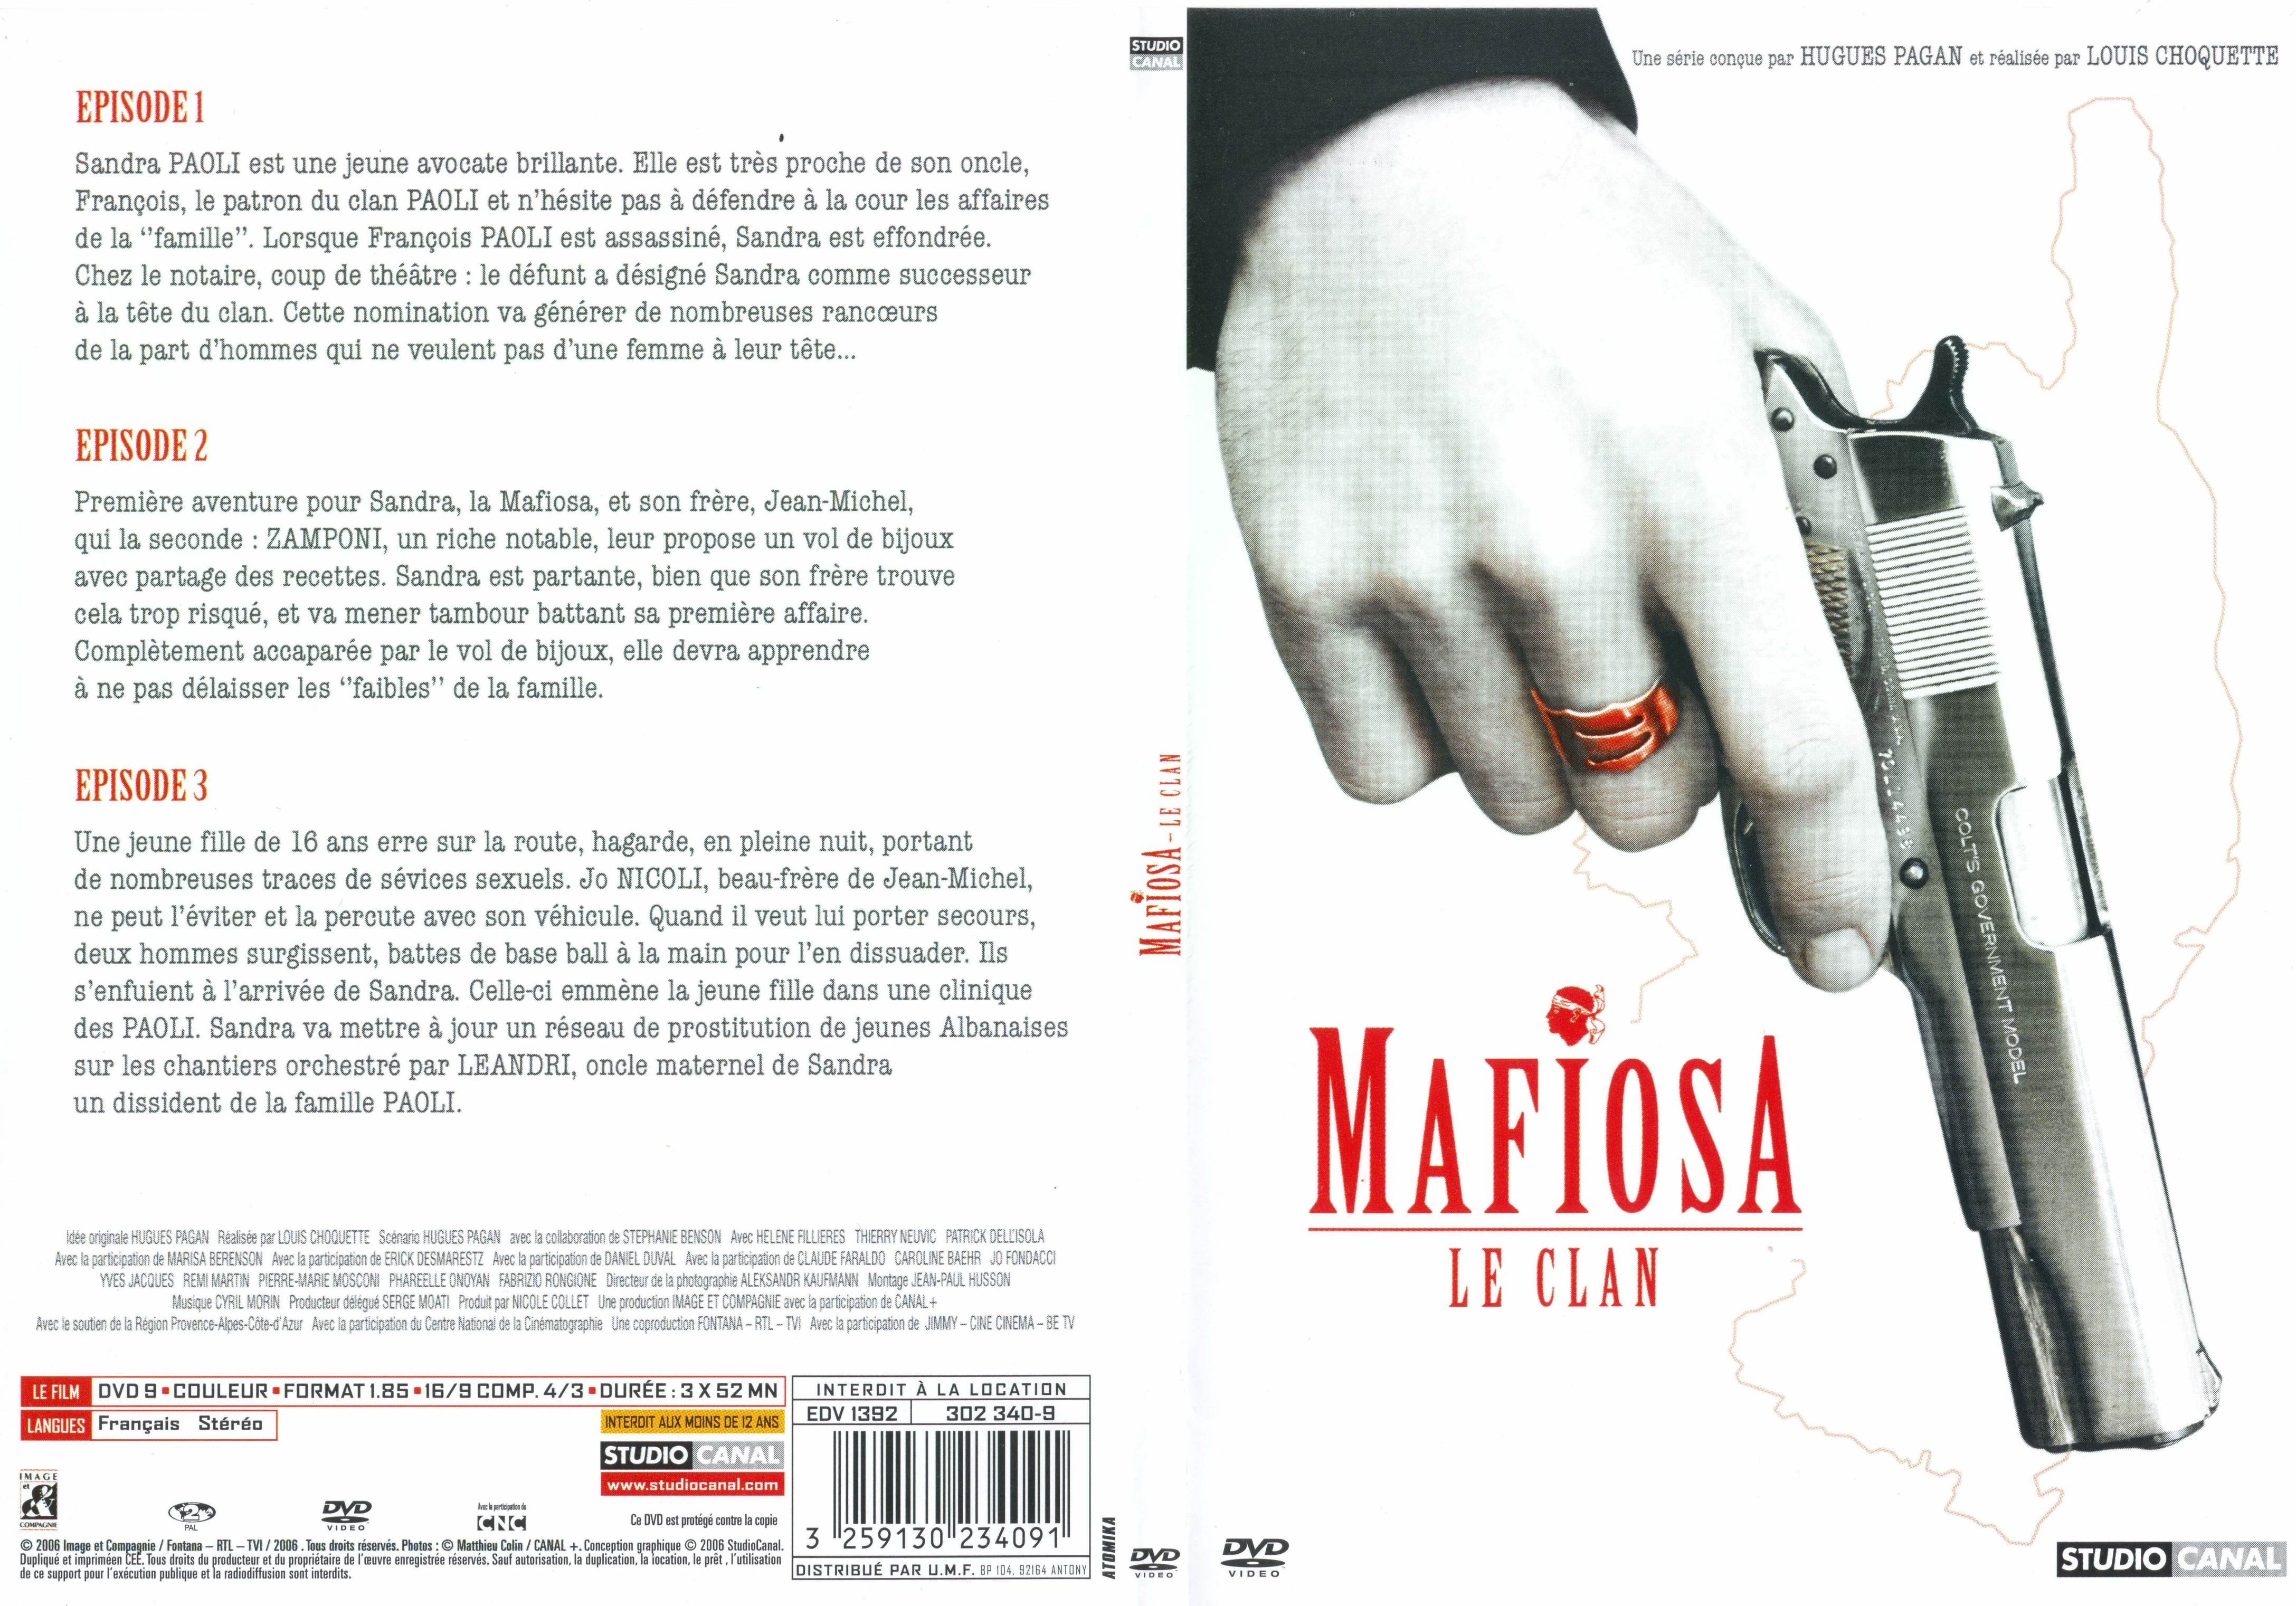 Jaquette DVD Mafiosa dvd 1